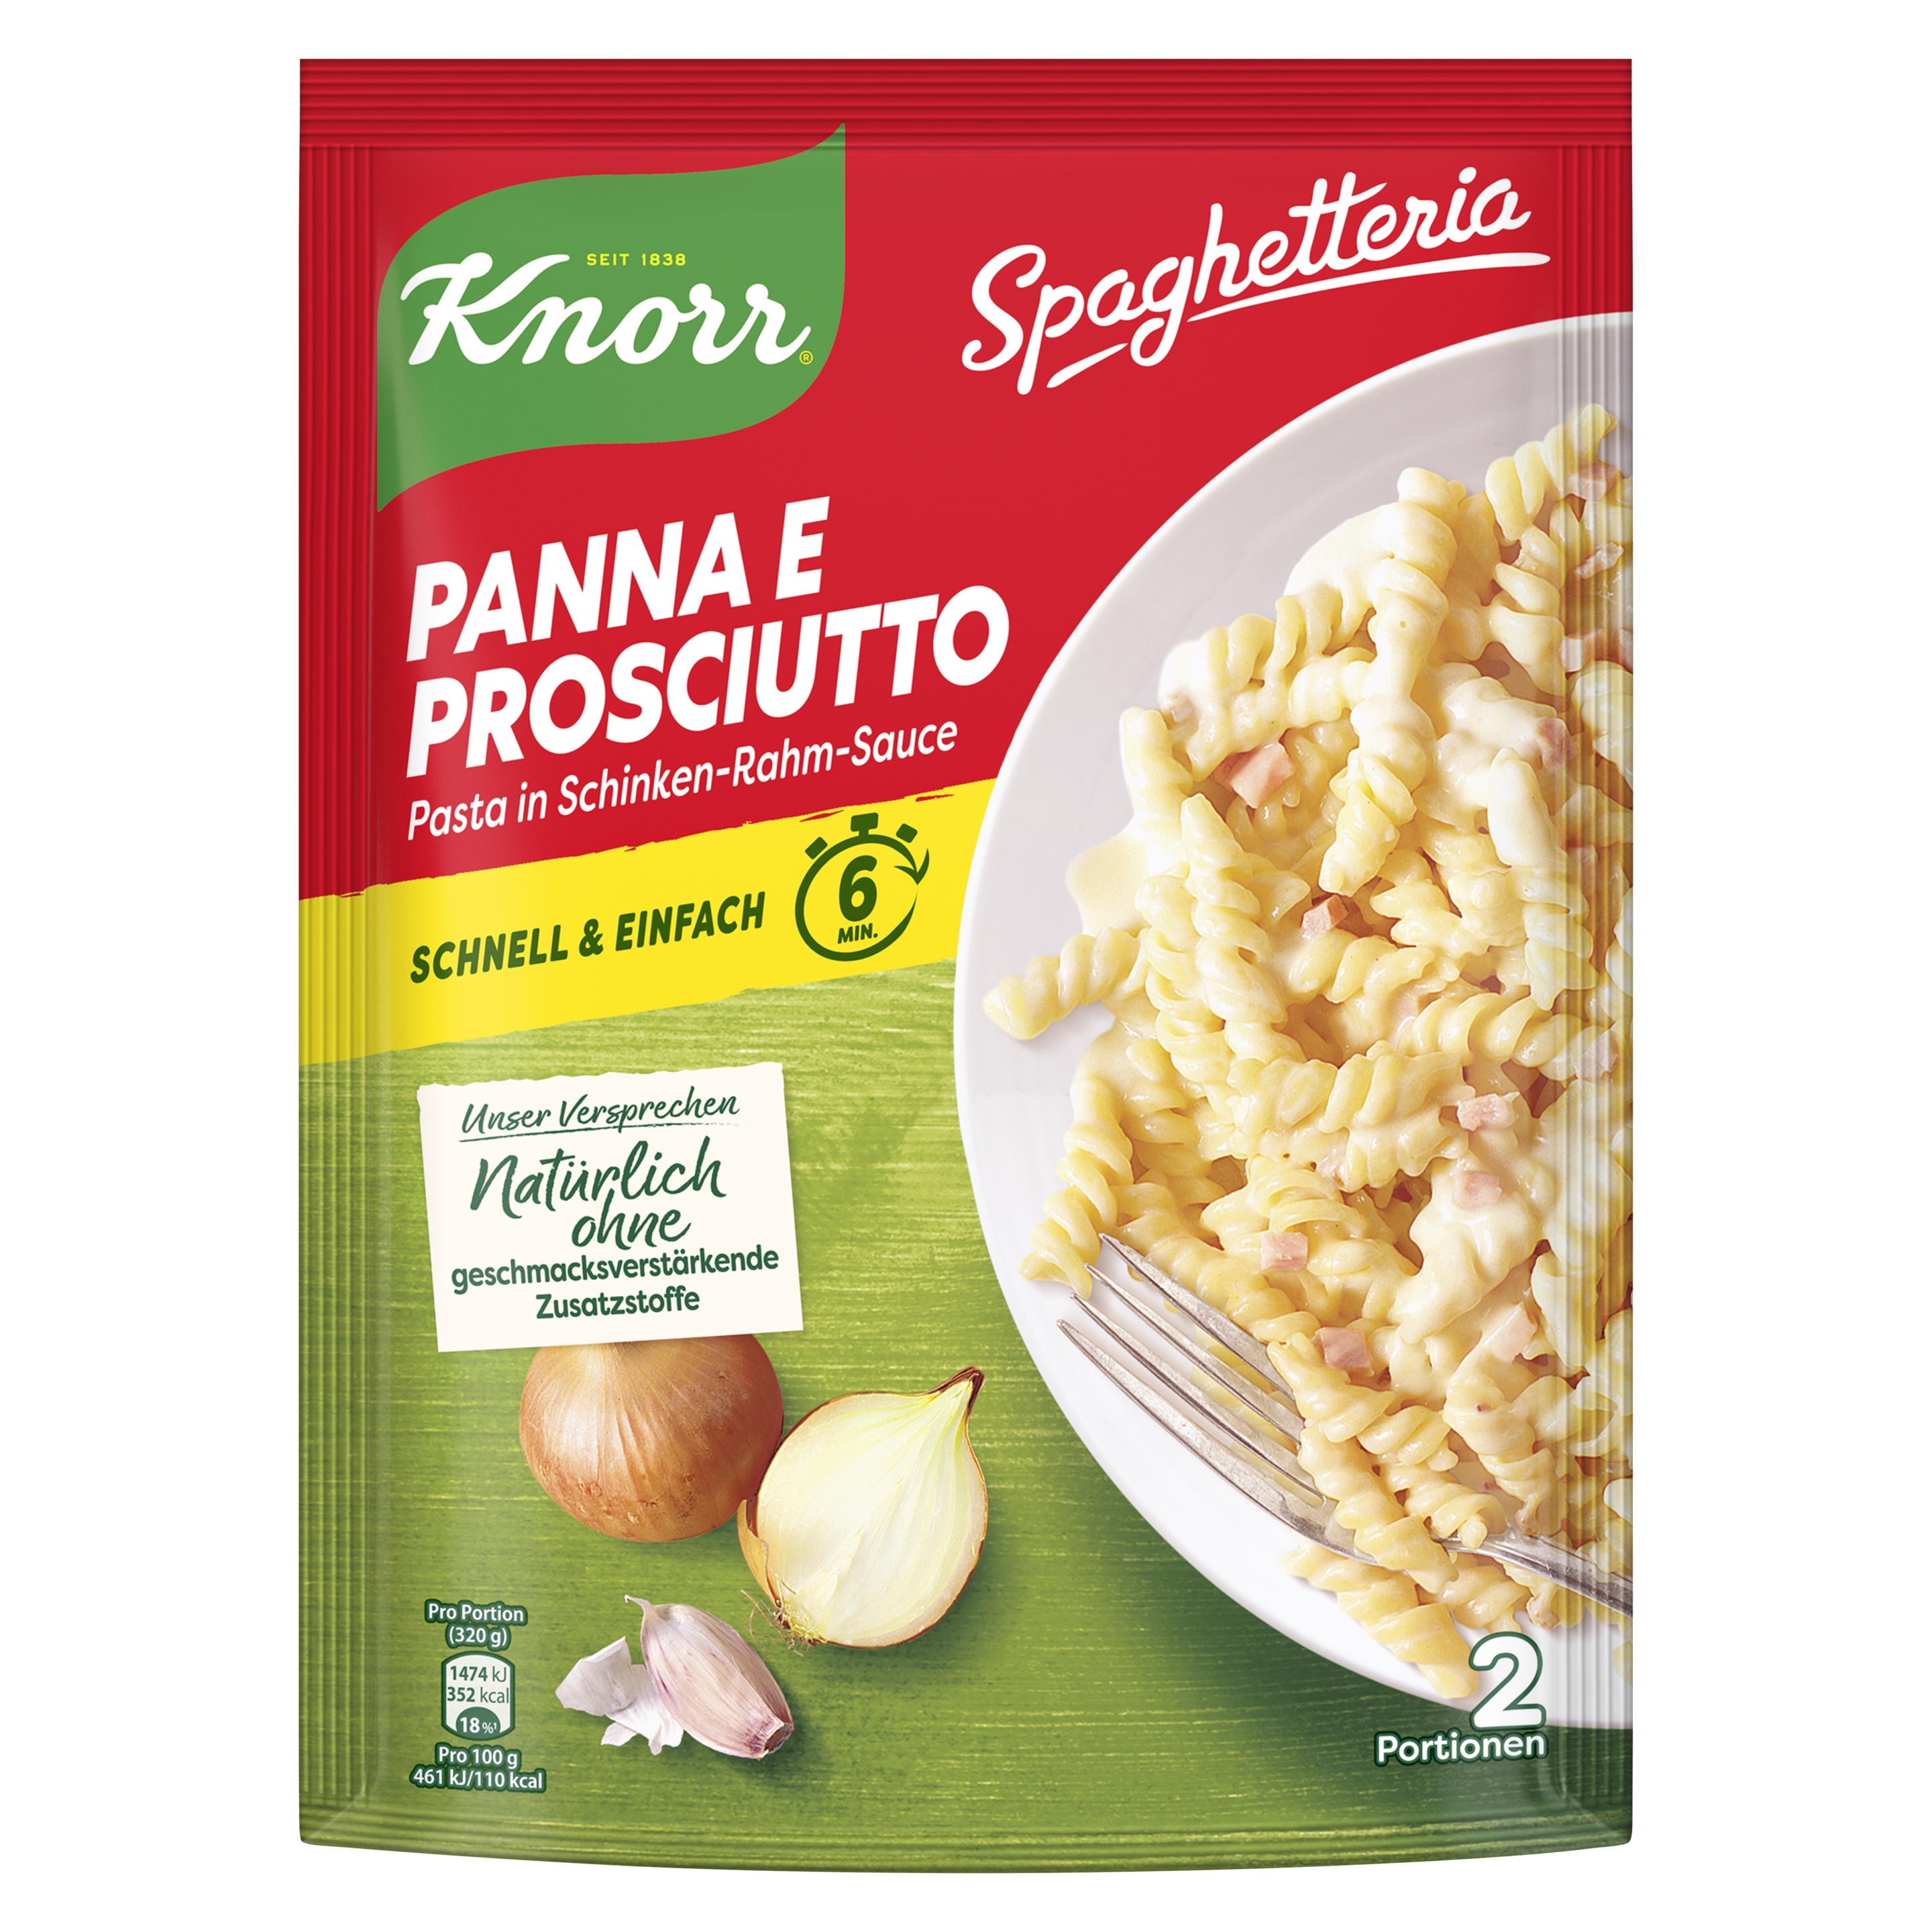 Knorr Spaghetteria Prosciutto Nudel-Fertiggericht 166g